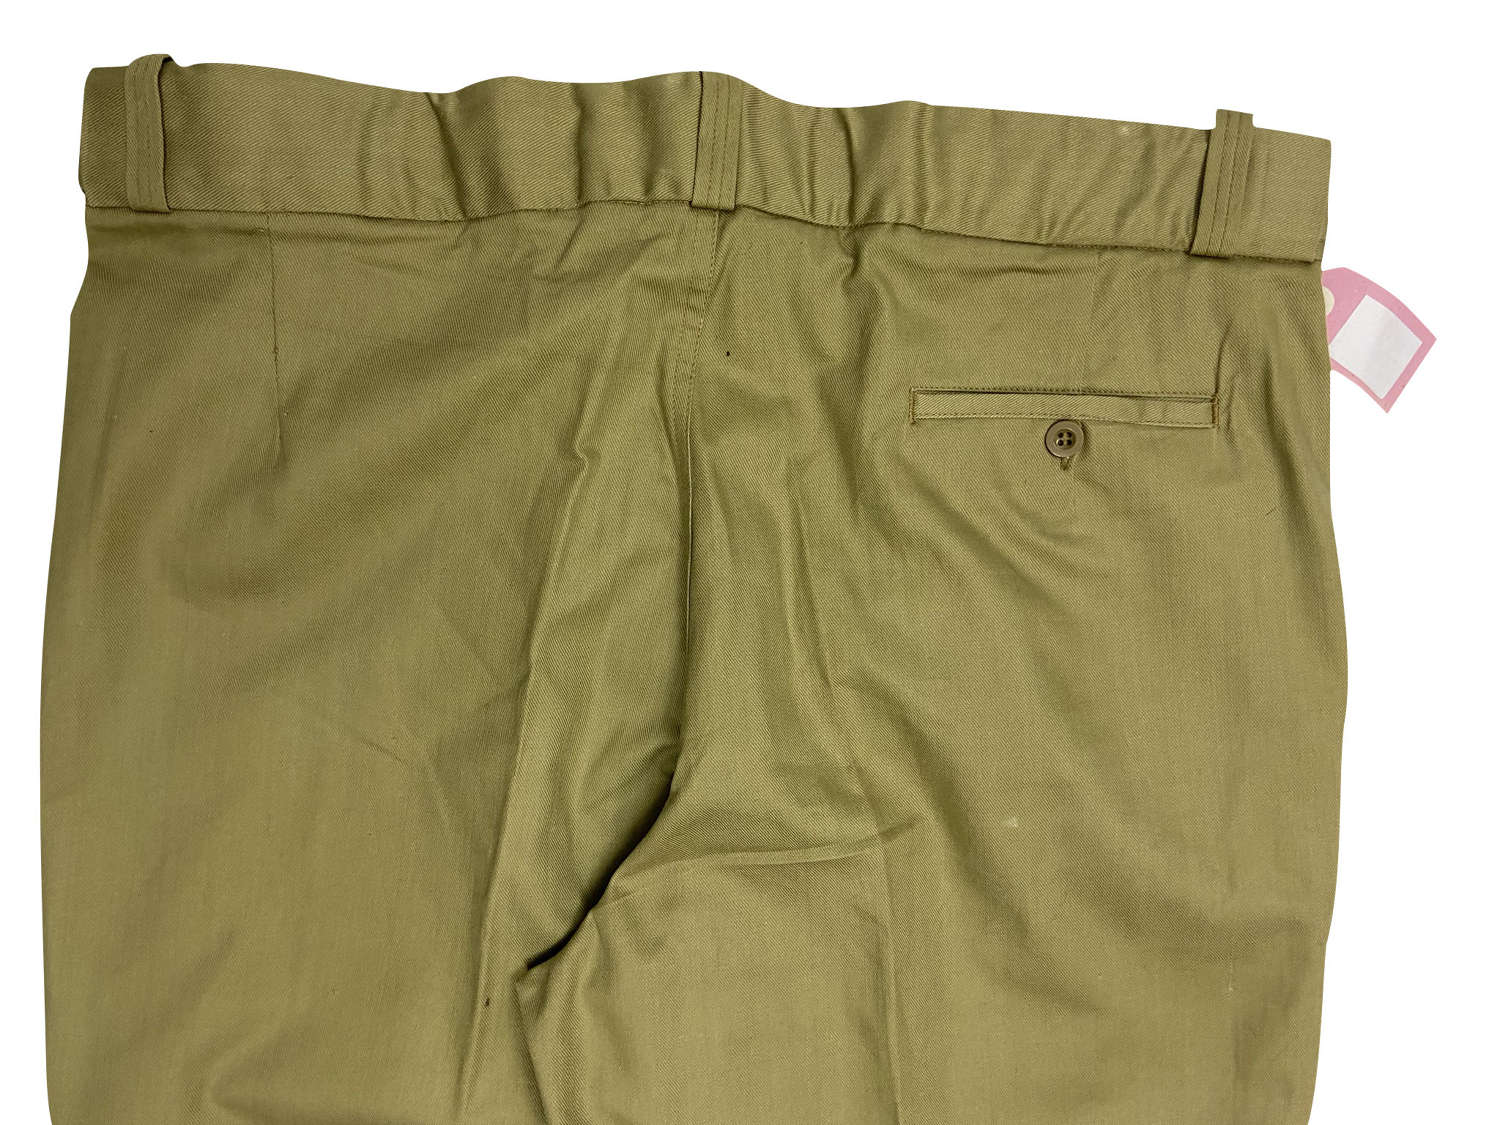 Original 1960s British Cotton Drill Trousers - Size 40